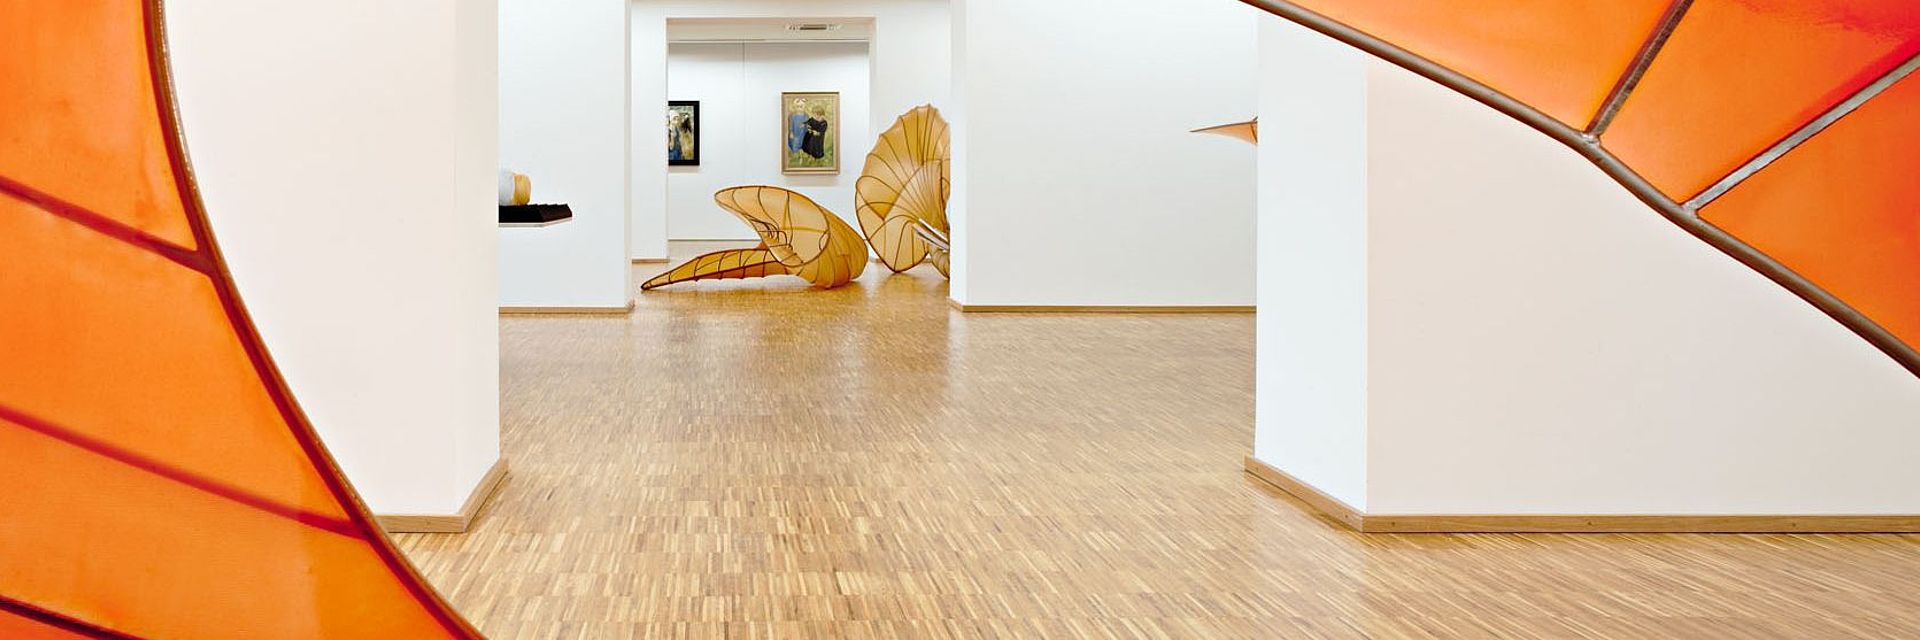 Innenansicht in den Ausstellungsraum durch orangenes Kunstwerk